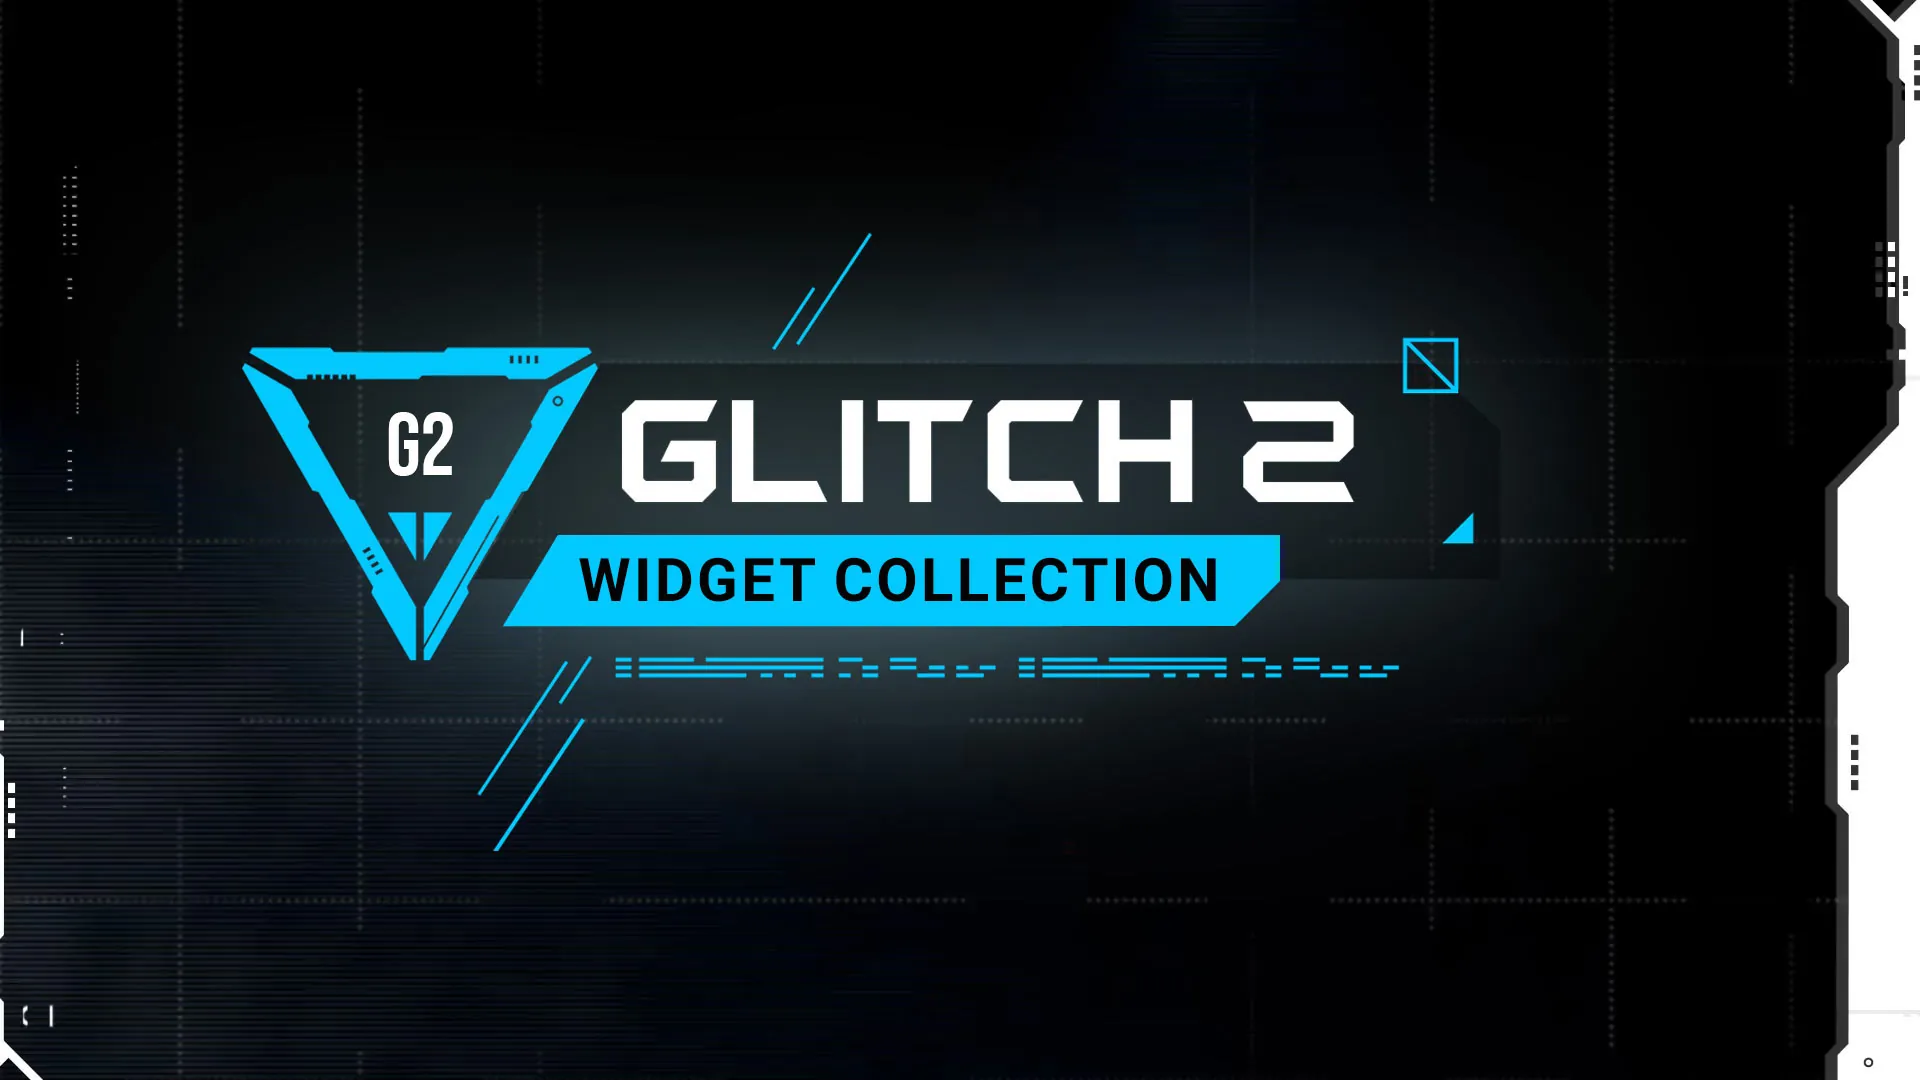 Glitch 2 Widget Collection